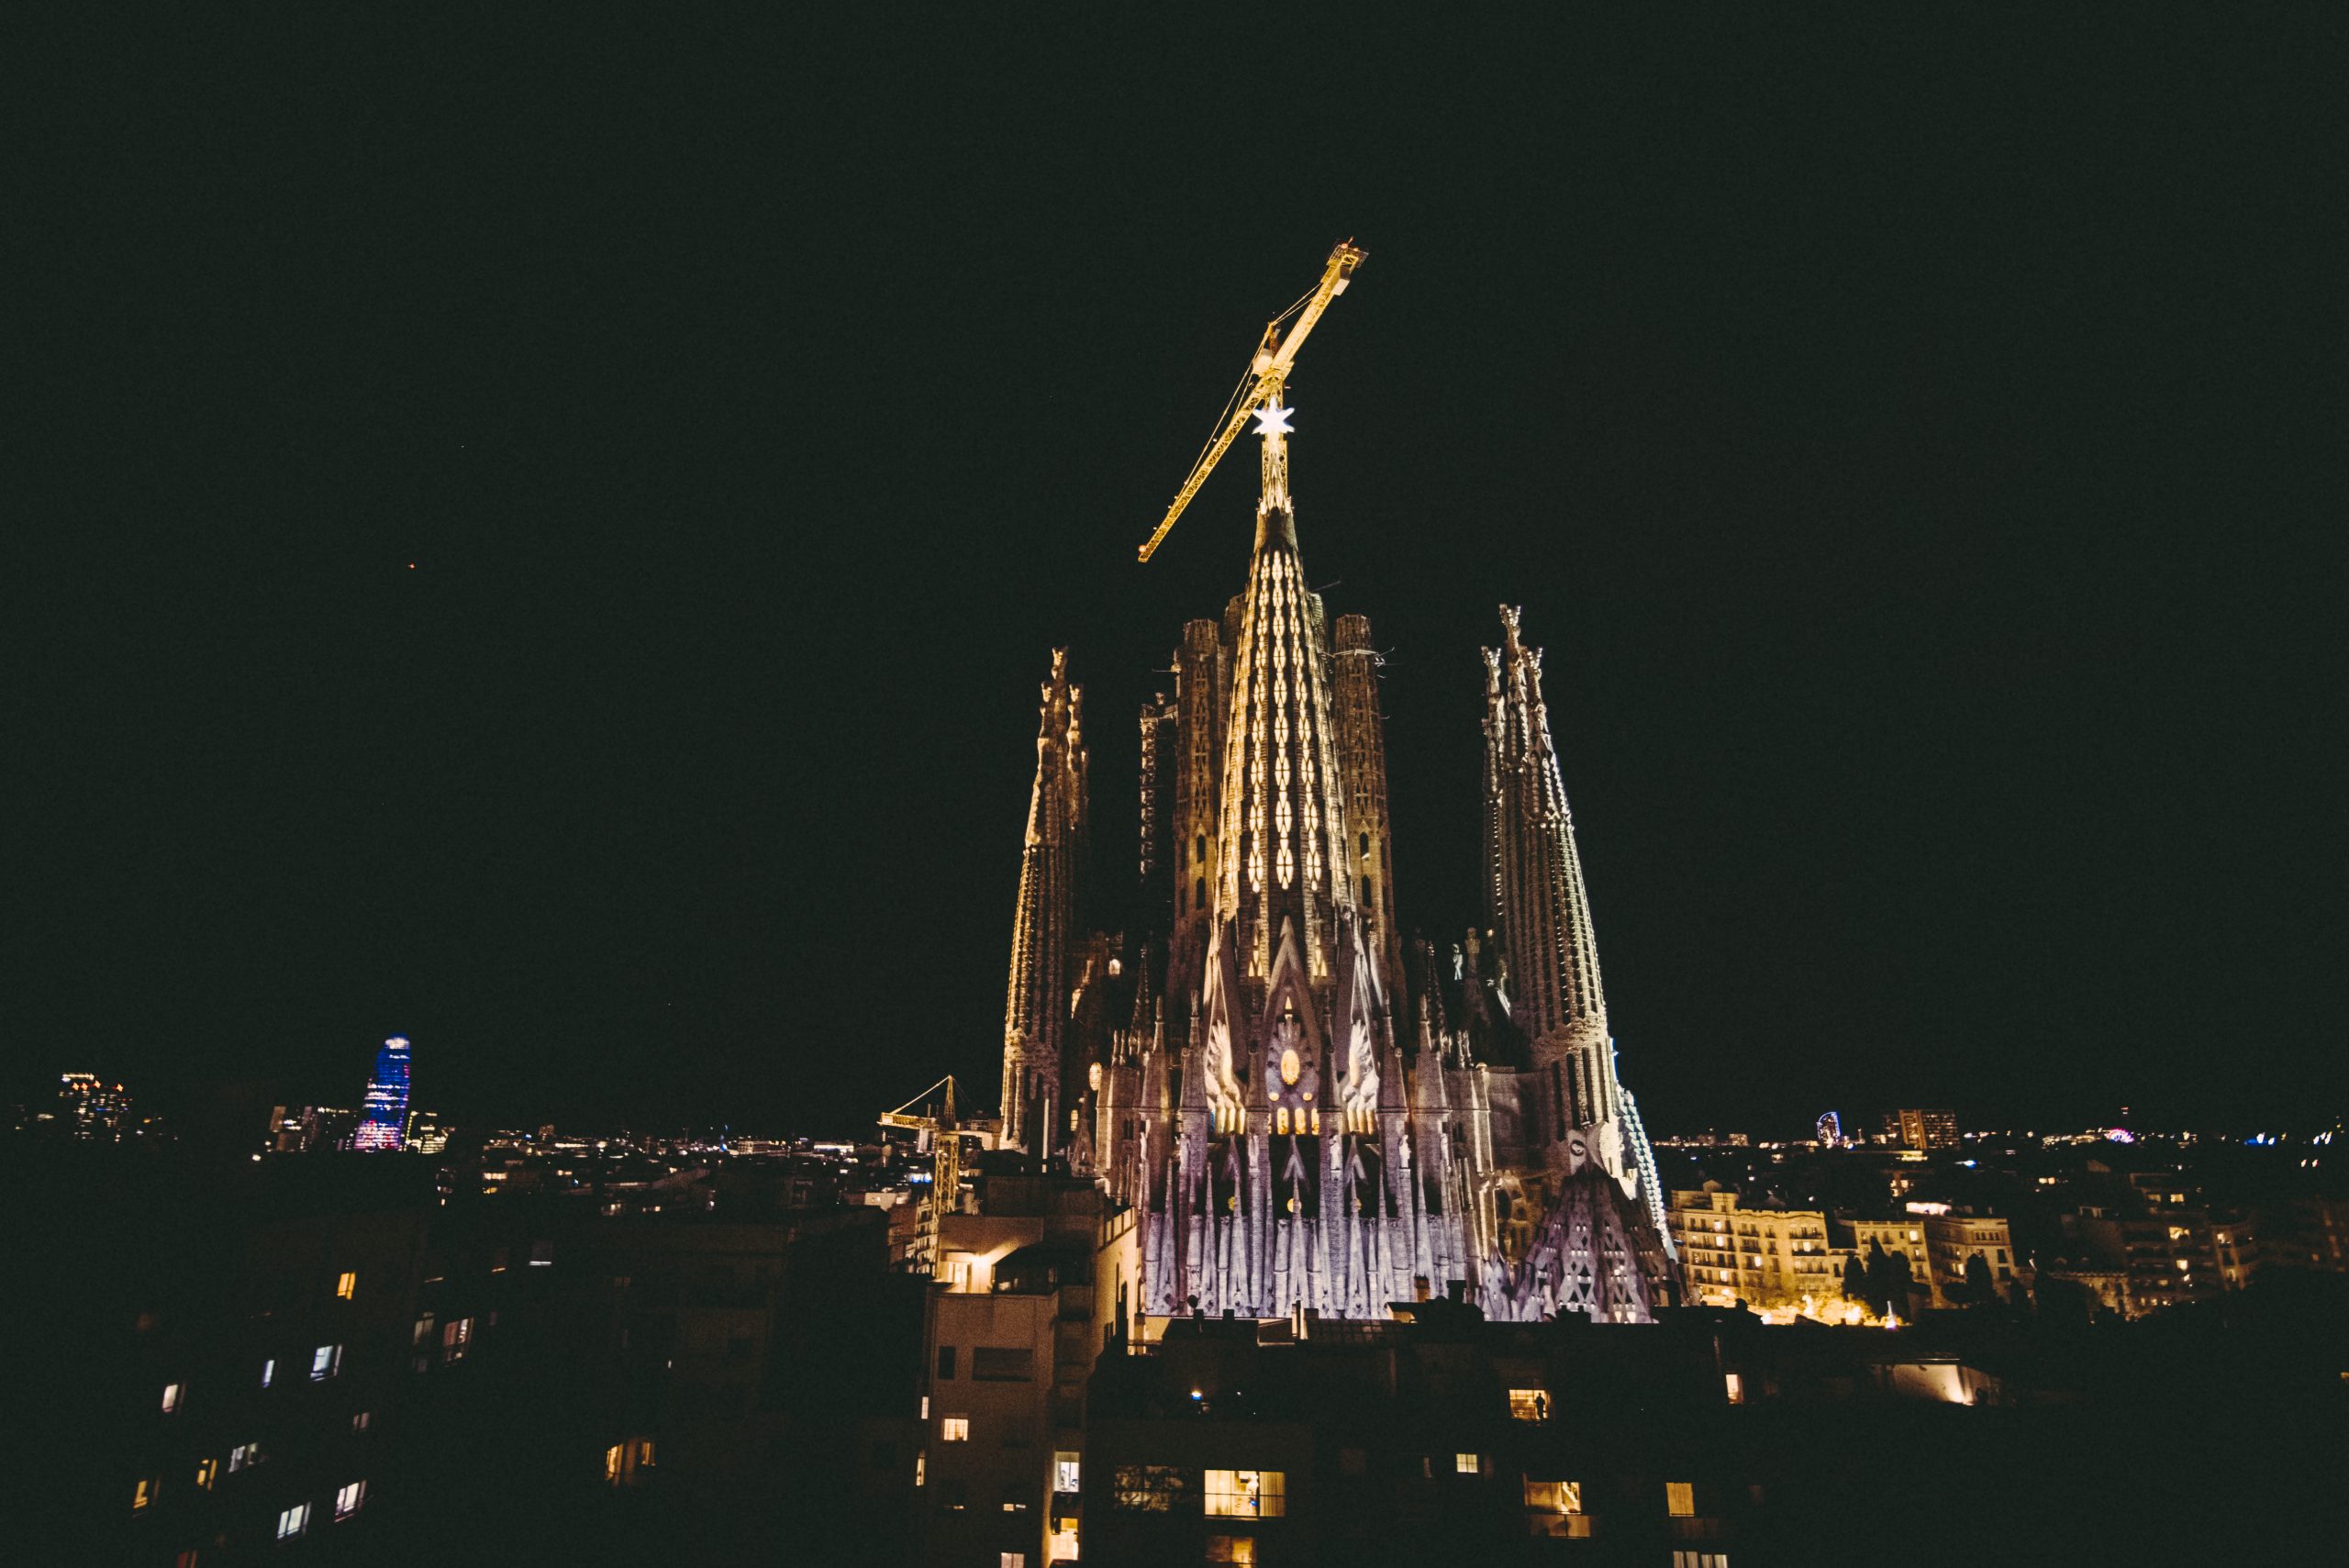 La Sagrada Familia estrena una torre de 138 metros y cambia el perfil de Barcelona